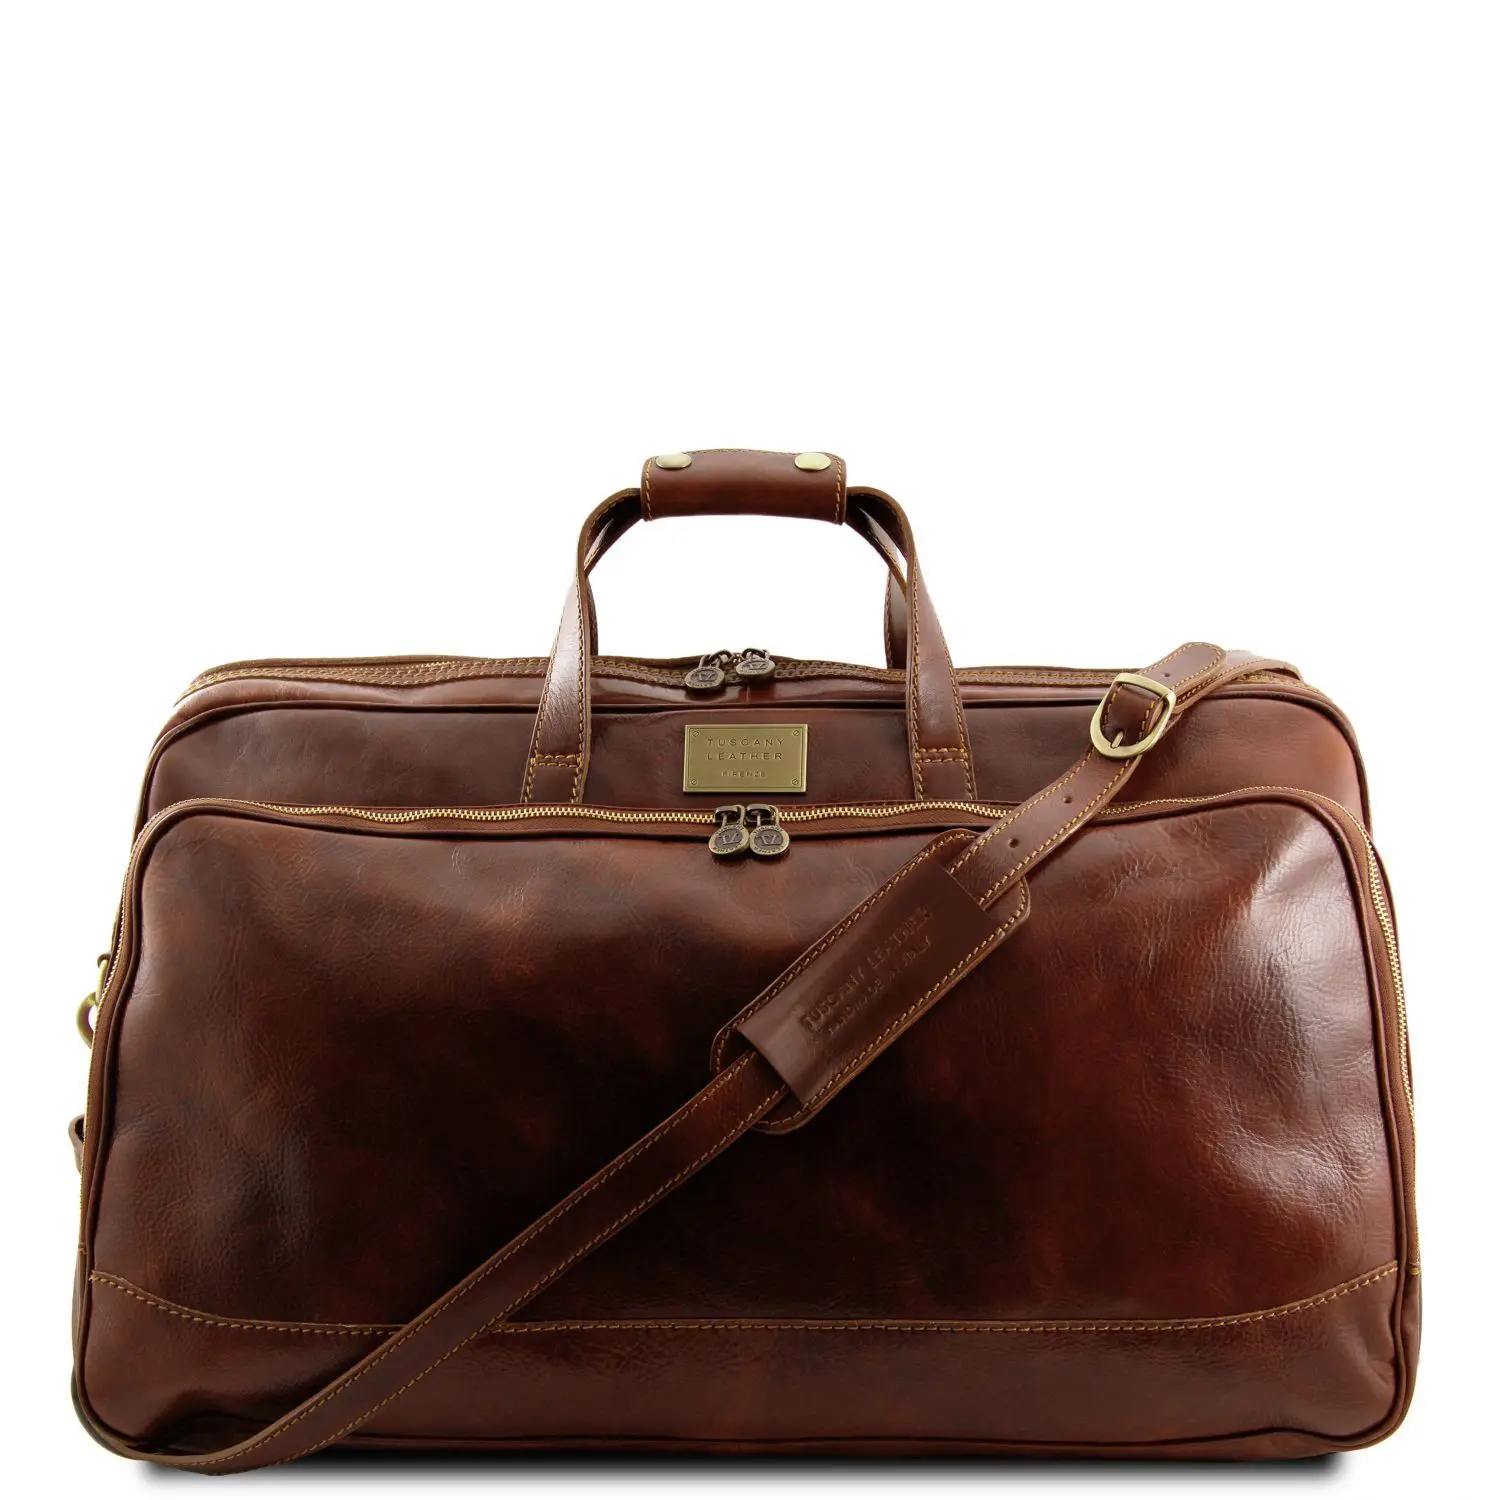 Leather Duffle Bag - Small Size - Bora Bora - Domini Leather